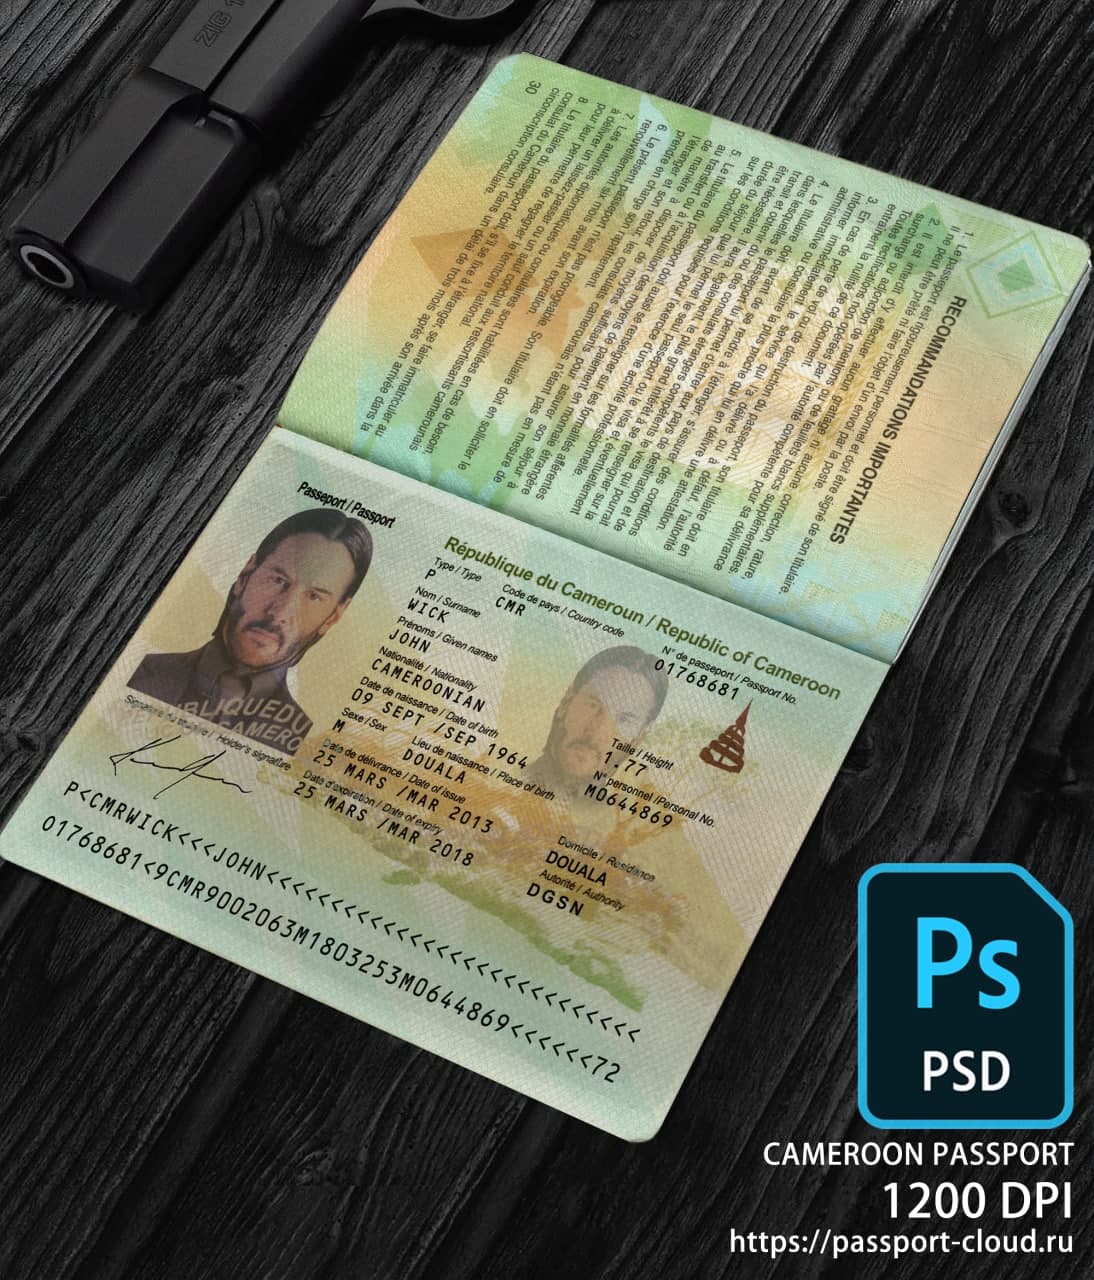 Cameroon Passport-0